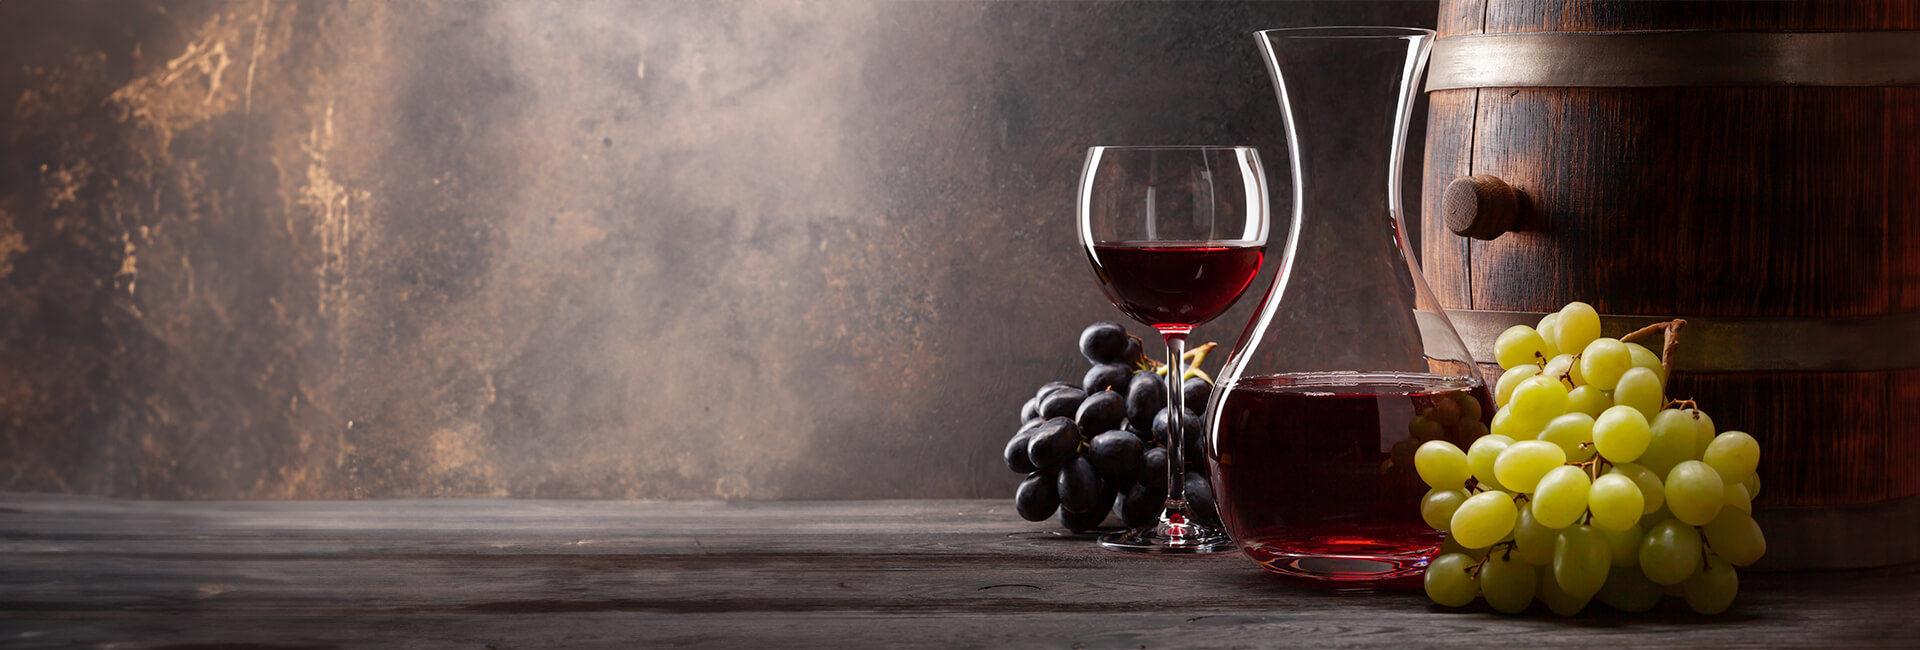 Sagra dell’uva e del vino